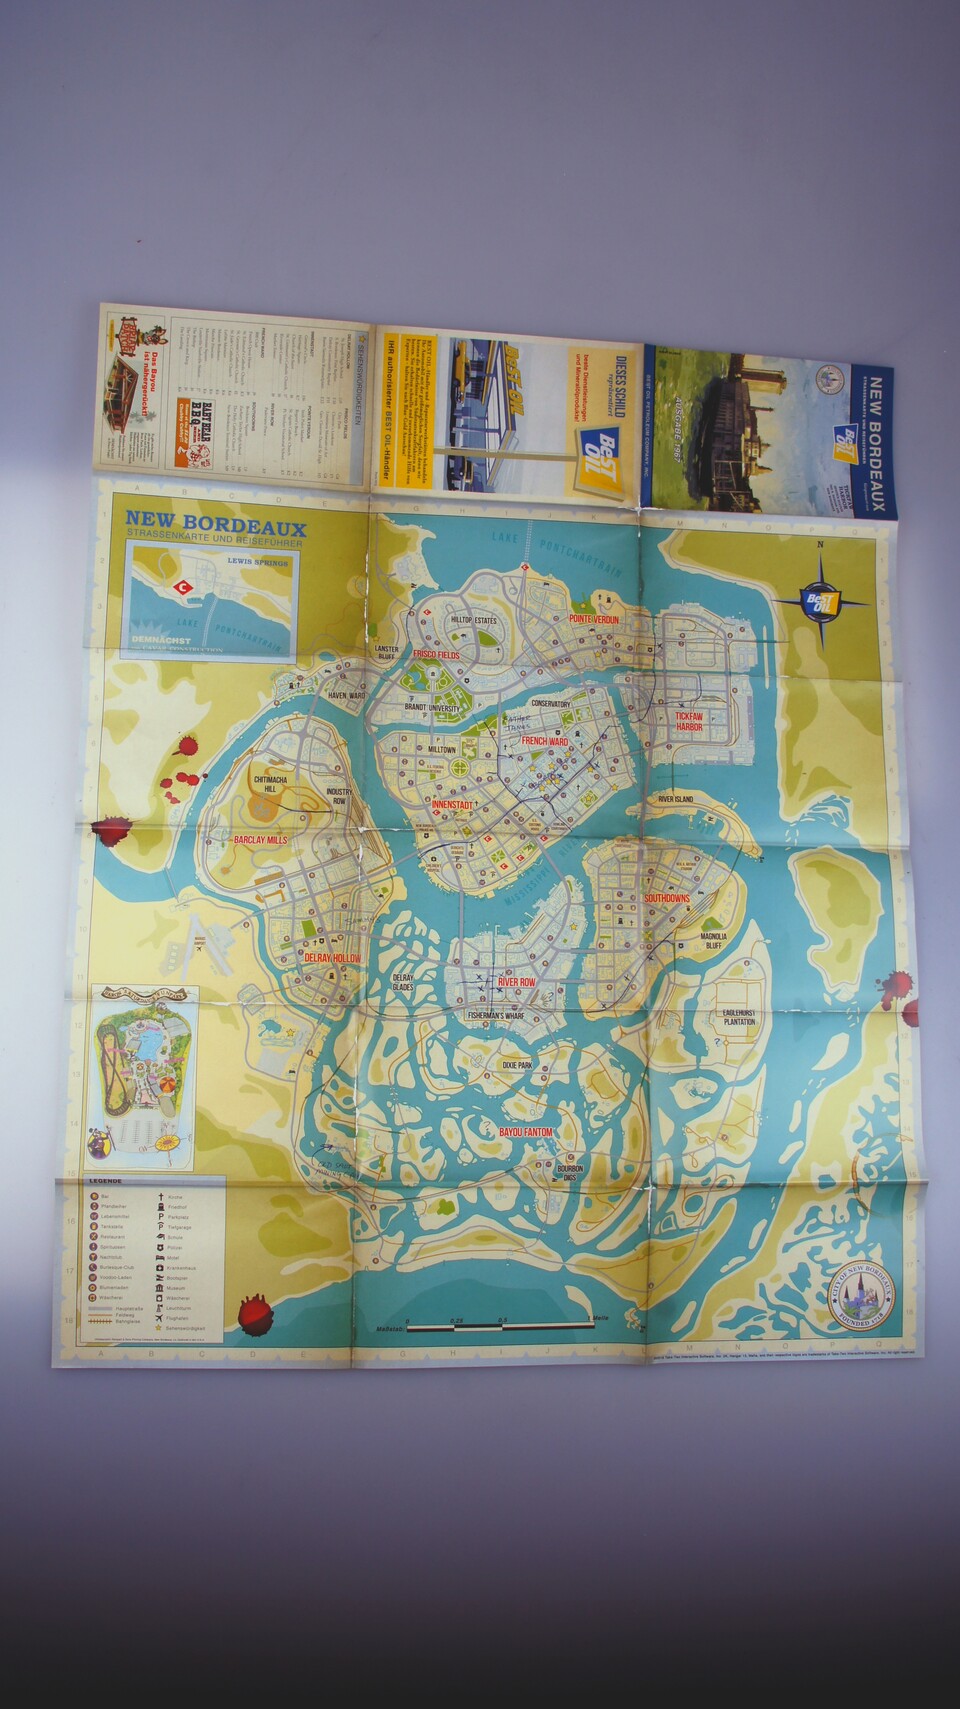 Die Weltkarte von Mafia 3 mit allen Bezirken und Vierteln gab's bisher noch nicht zu sehen.